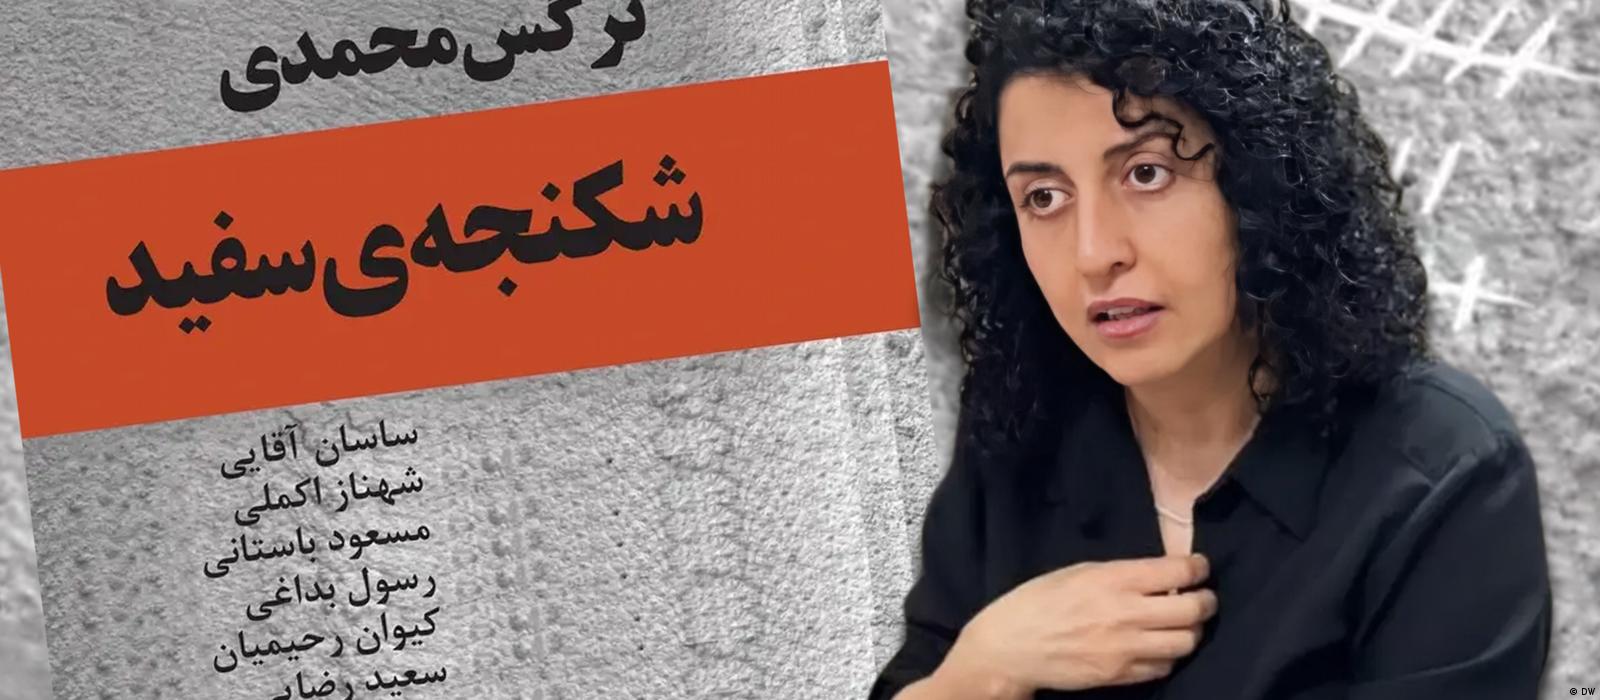 Ναργκίς Μοχαμαντί σταμάτησε την απεργία πείνας μετά την ικανοποίηση του αιτήματός της